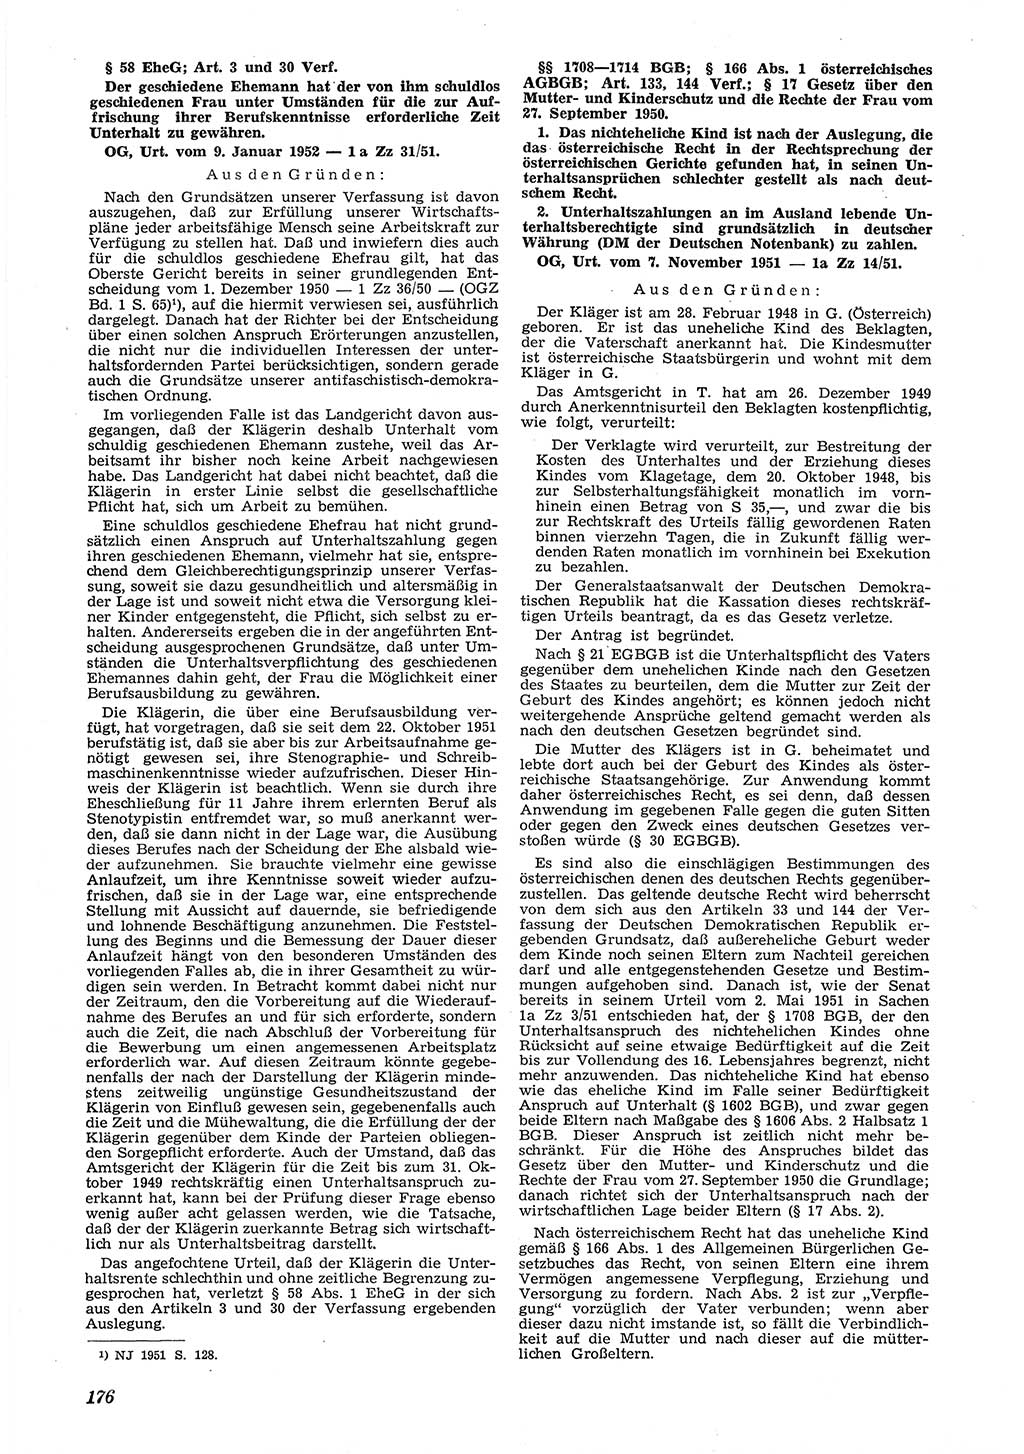 Neue Justiz (NJ), Zeitschrift für Recht und Rechtswissenschaft [Deutsche Demokratische Republik (DDR)], 6. Jahrgang 1952, Seite 176 (NJ DDR 1952, S. 176)